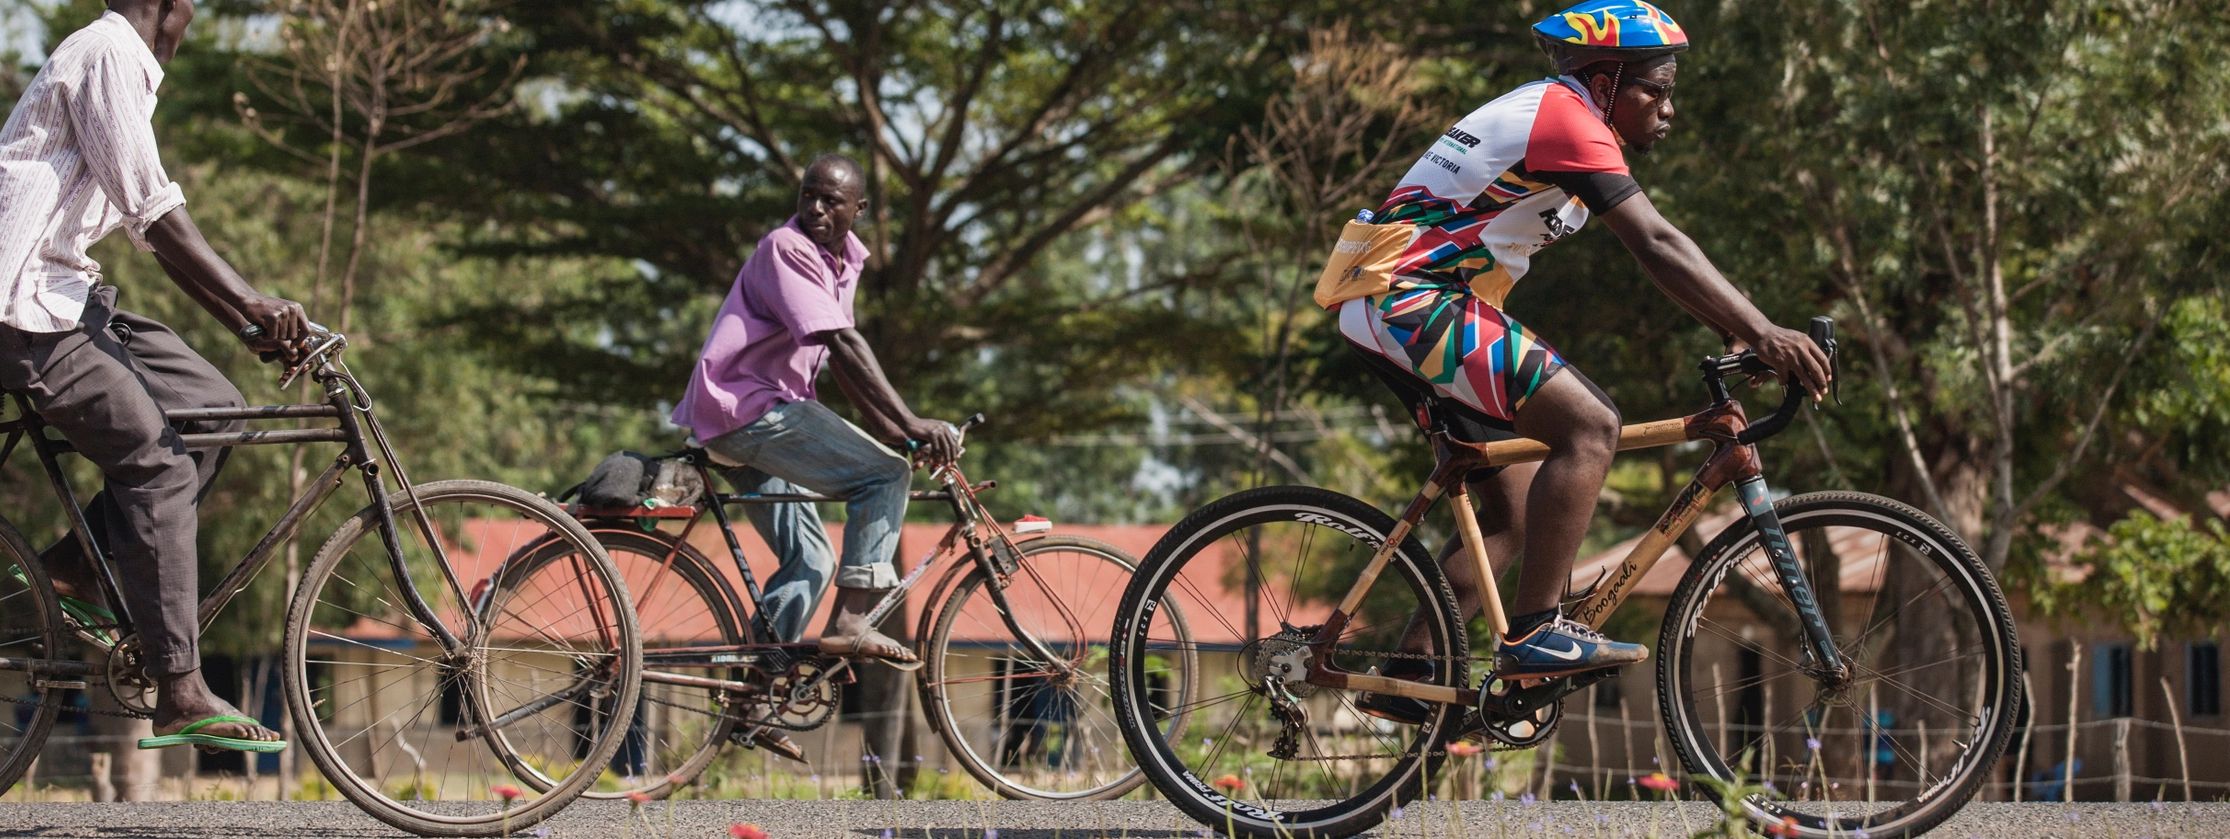 Used Bikes For Sale In Uganda